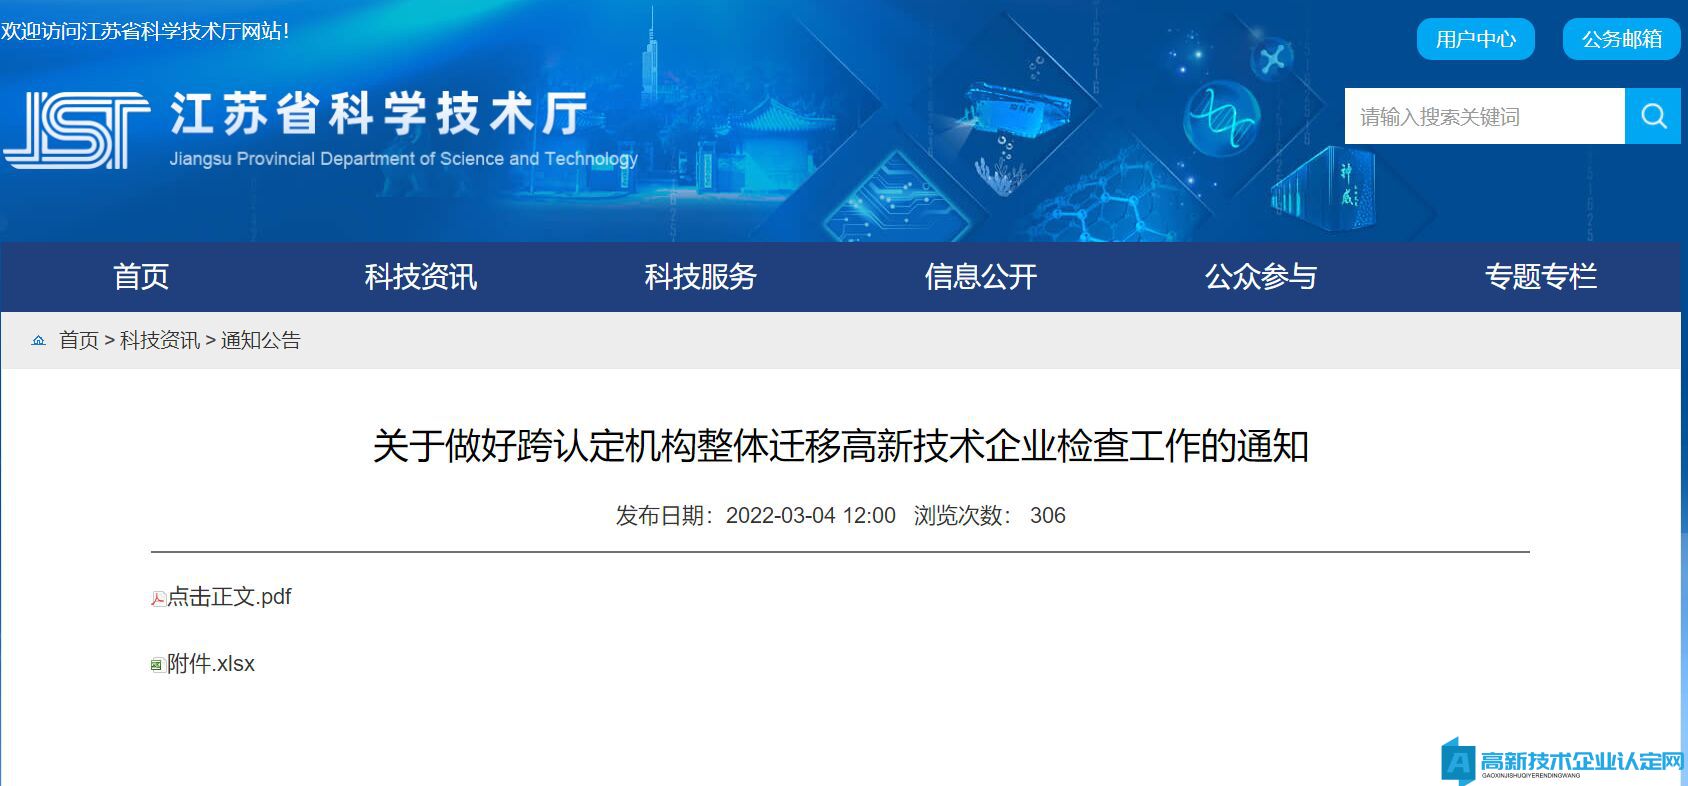 [上海市]嘉定区2021年高新技术企业认定资助申报指南